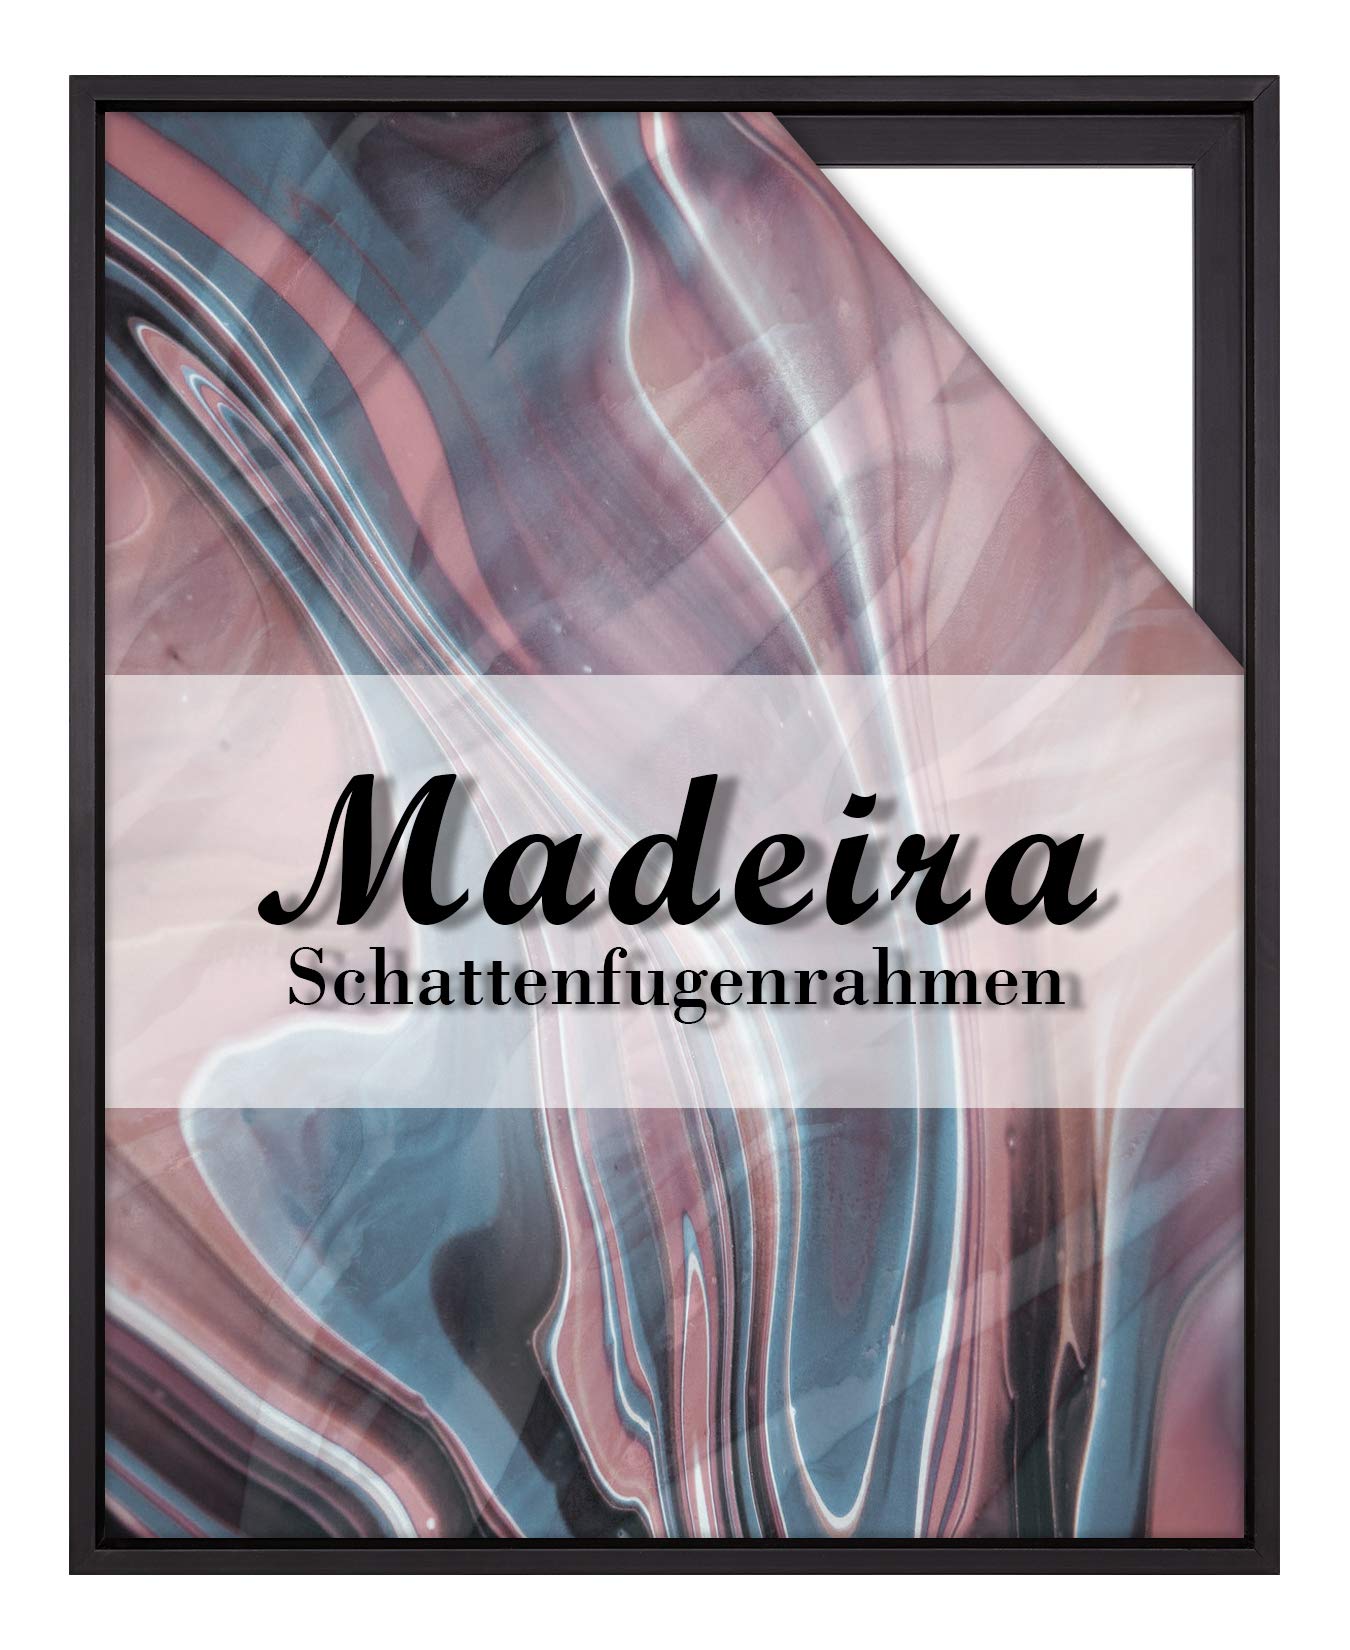 BIRAPA Madeira Schattenfugenrahmen für Leinwand 70x140 cm in Schwarz, Holzrahmen, Rahmen für Leinwände, Leerrahmen für Leinwand, Schattenfugenrahmen für Keilrahmen